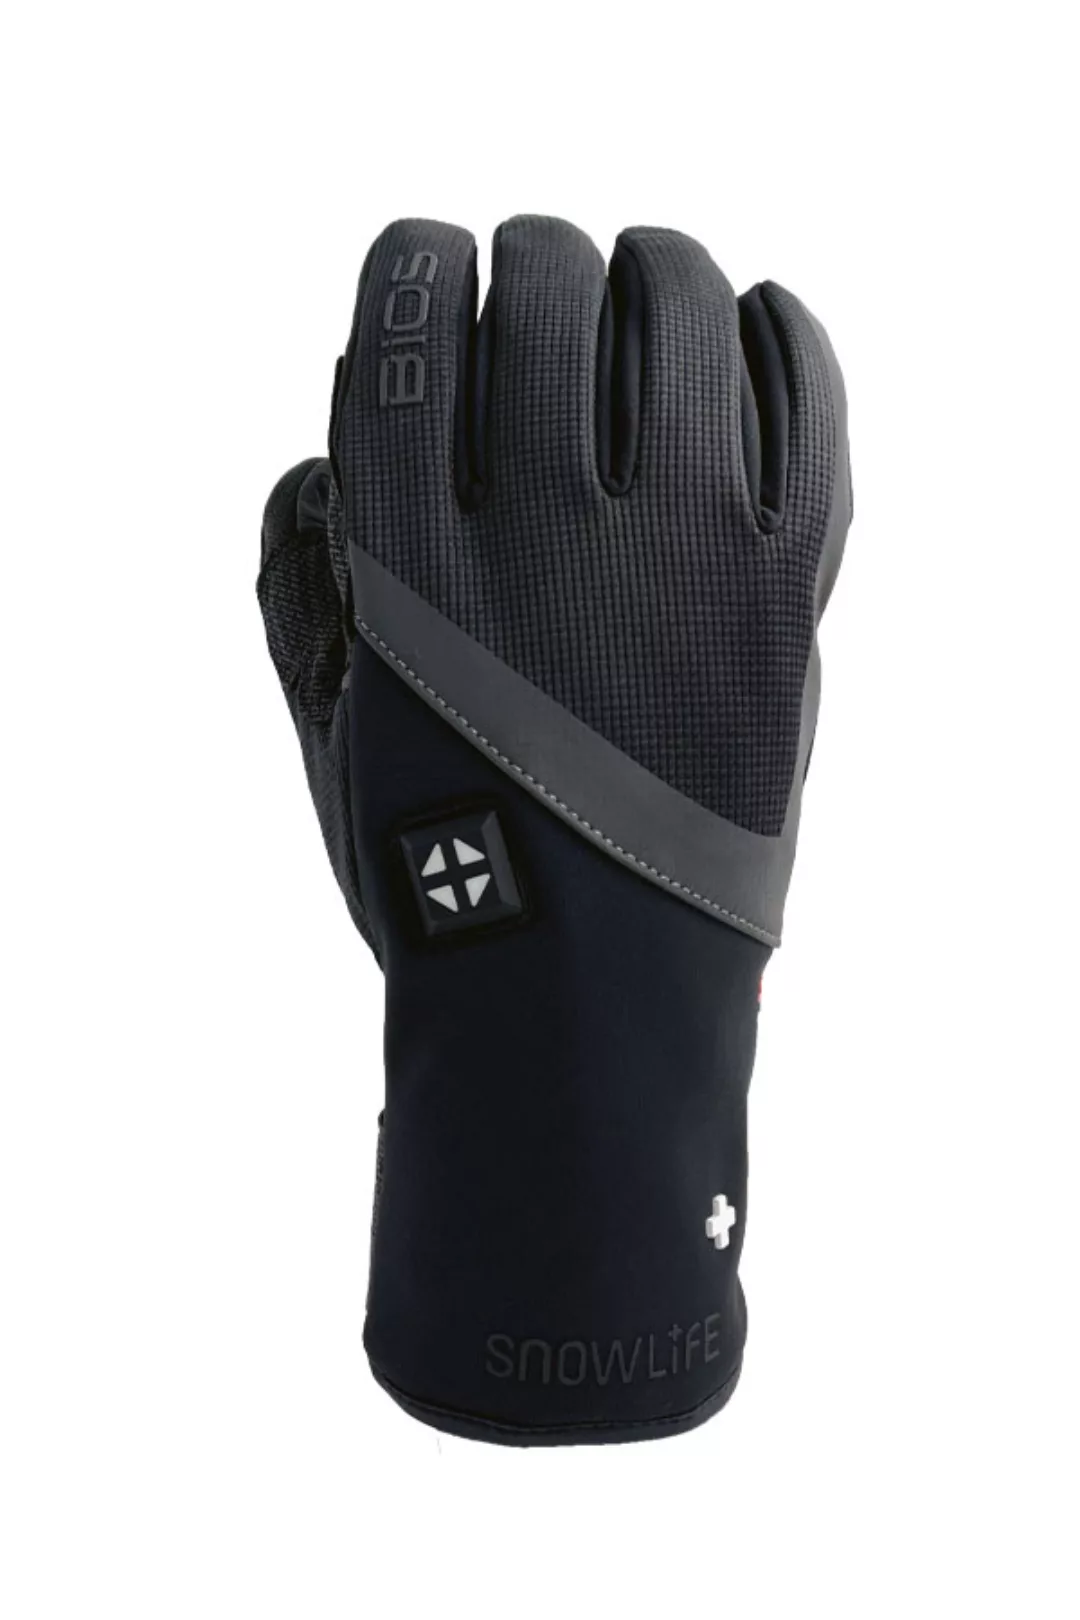 Snowlife BIOS Heat DT Glove  - beheizte Handschuhe günstig online kaufen